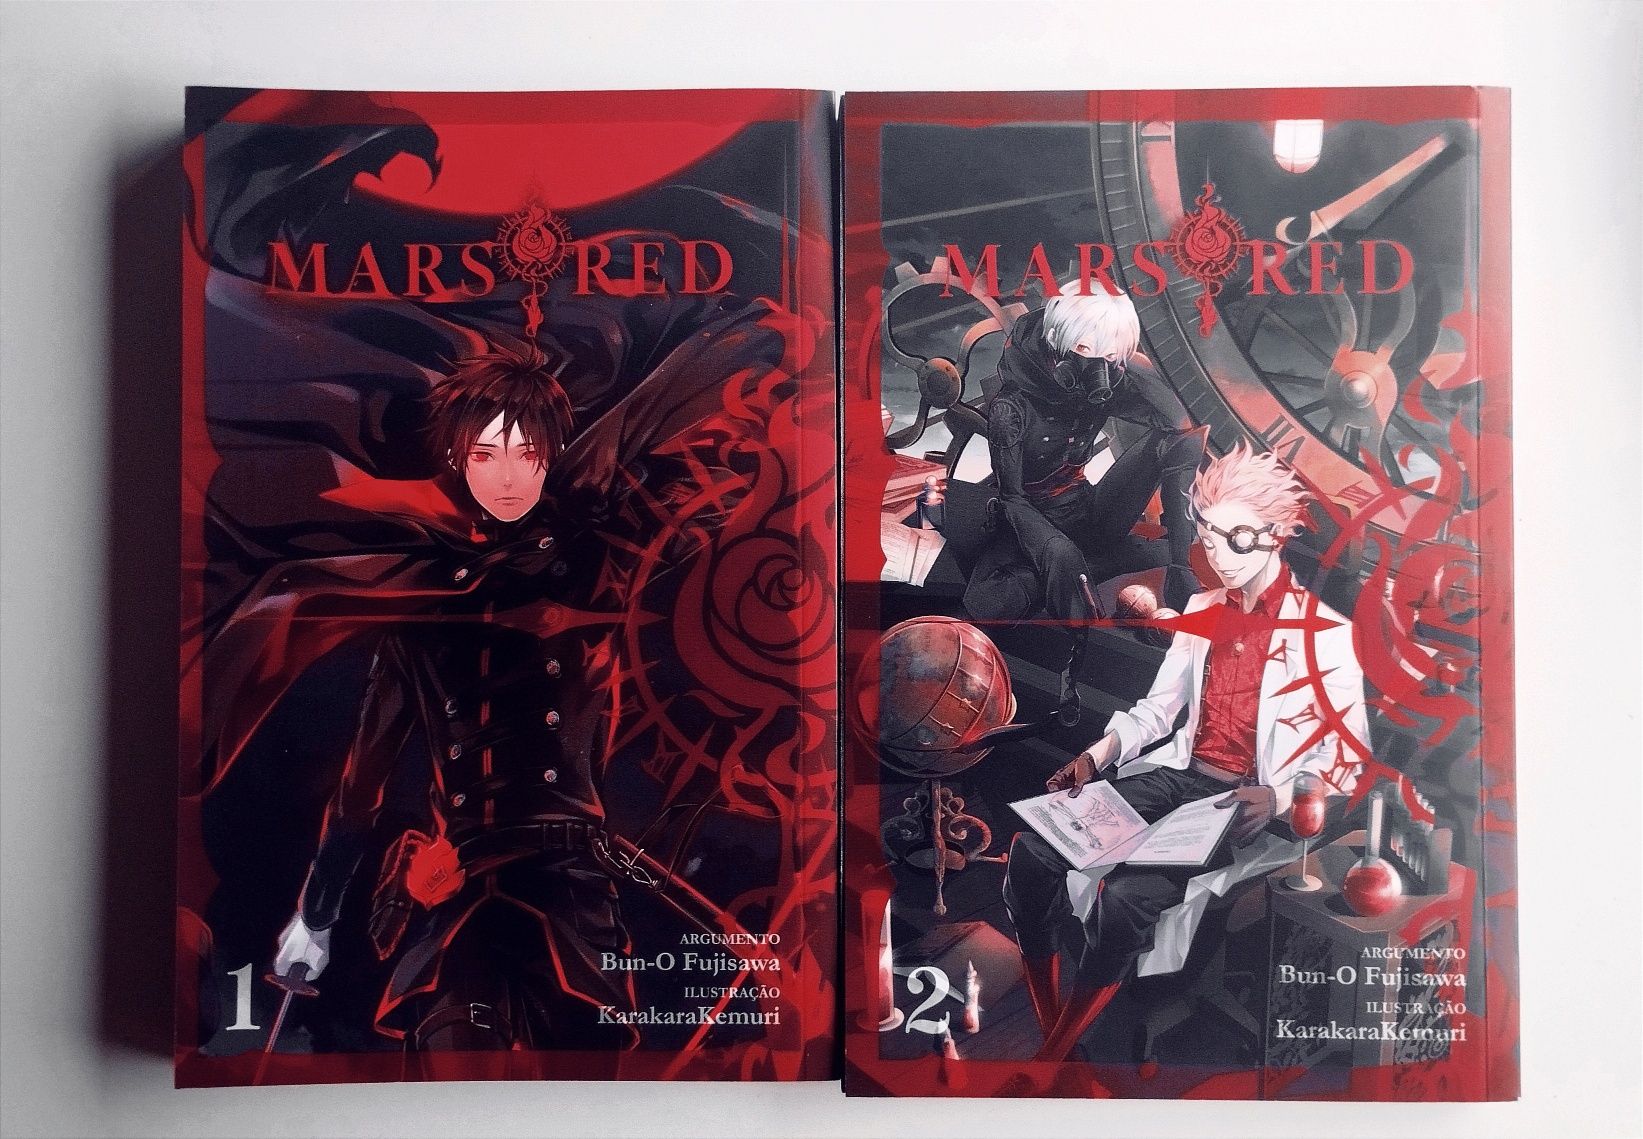 Mars red - manga - volume 1 e 2